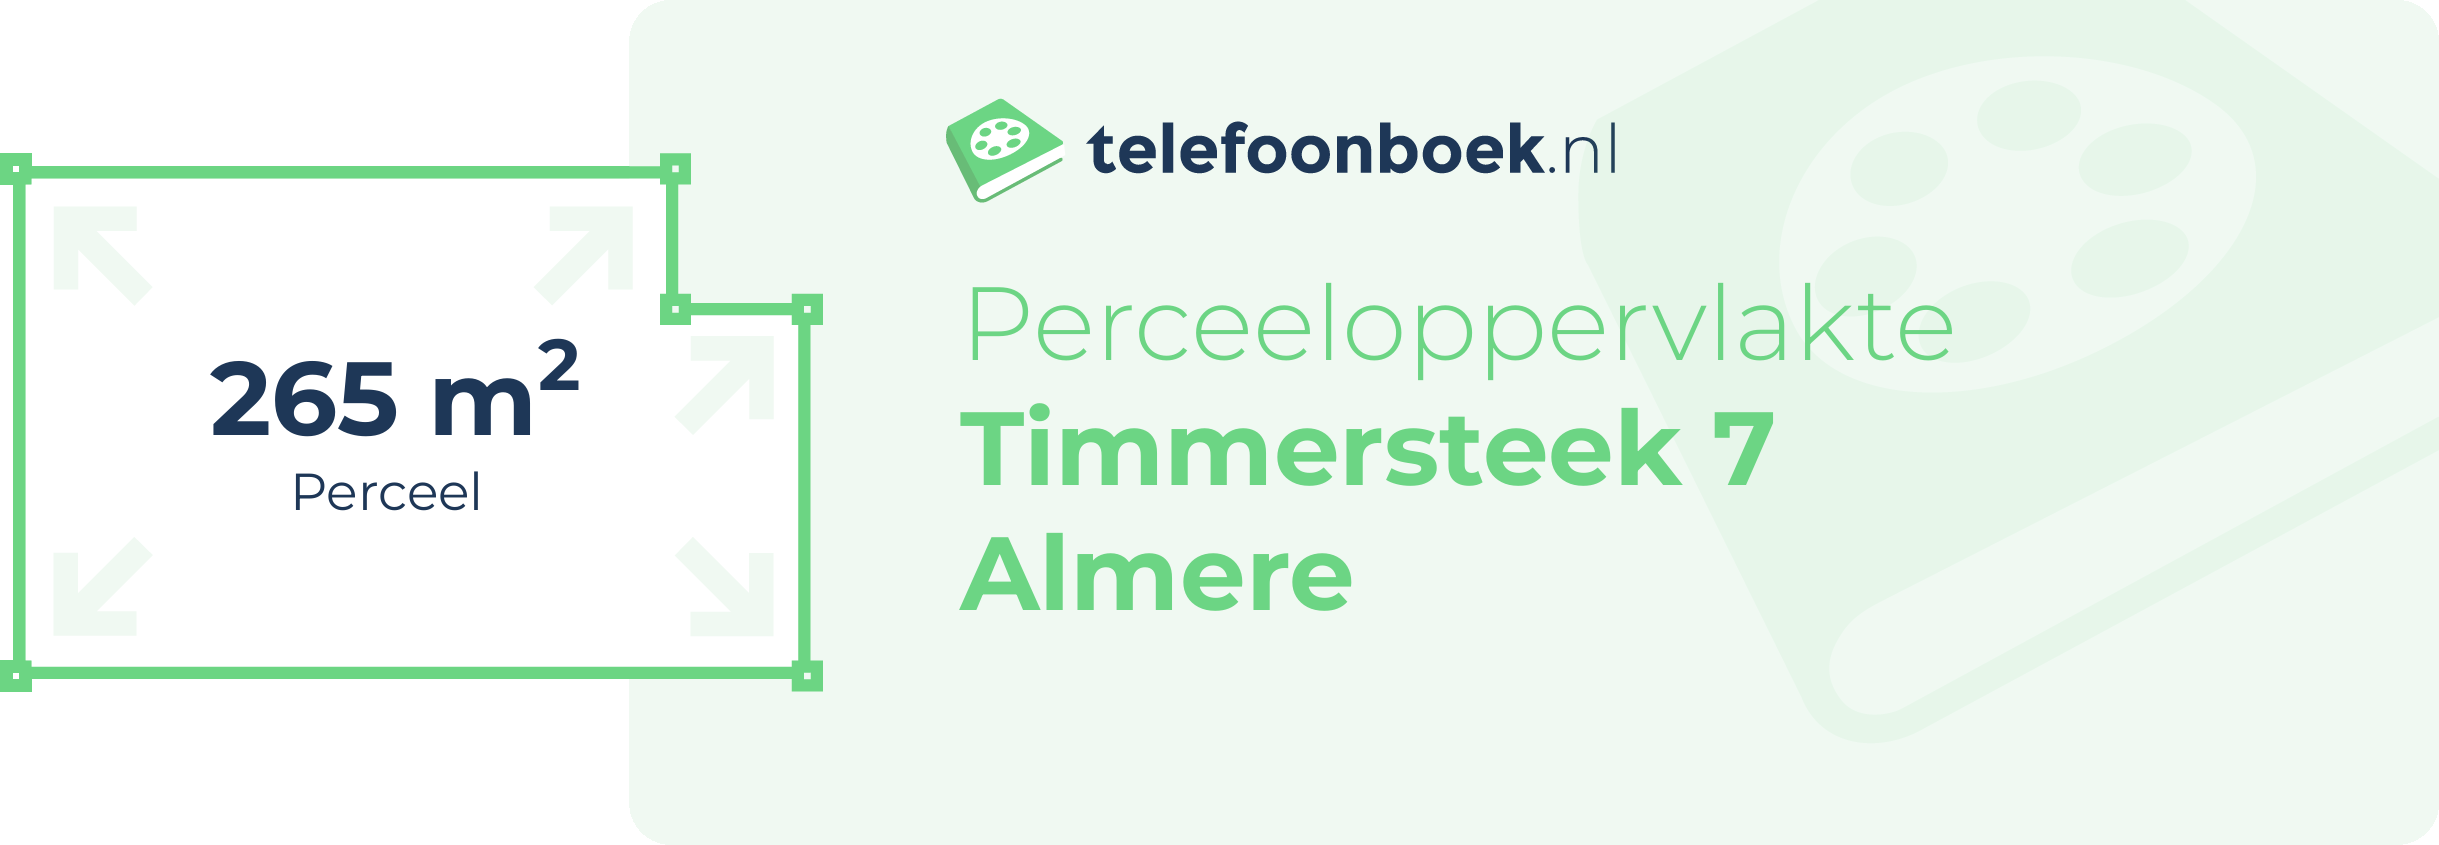 Perceeloppervlakte Timmersteek 7 Almere